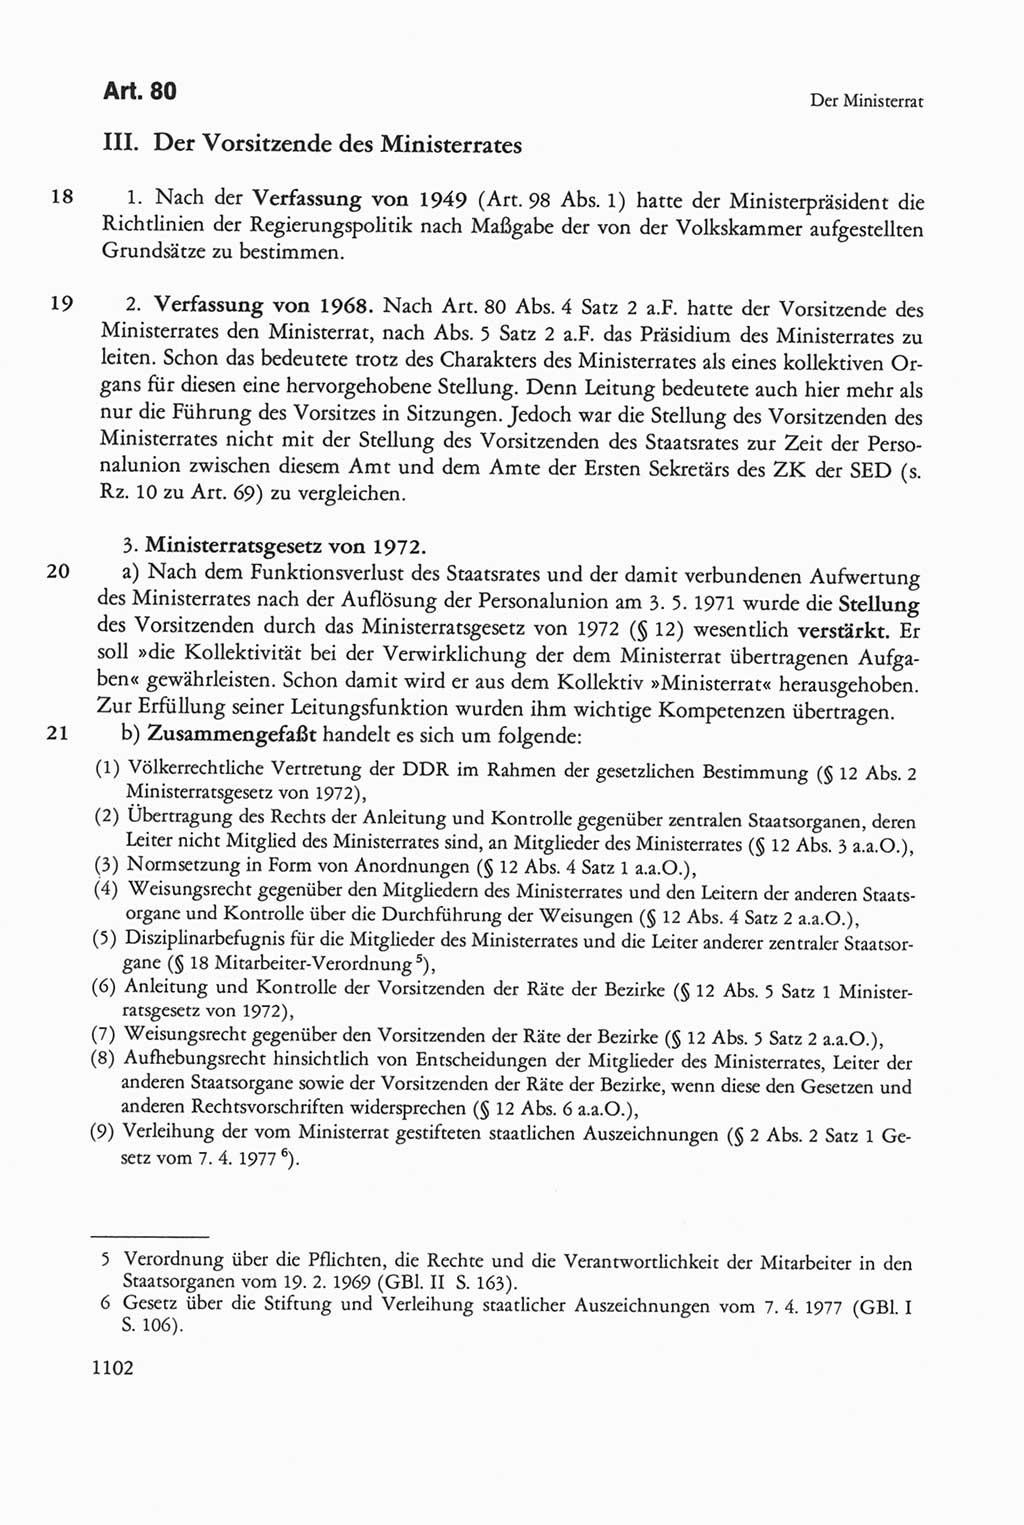 Die sozialistische Verfassung der Deutschen Demokratischen Republik (DDR), Kommentar 1982, Seite 1102 (Soz. Verf. DDR Komm. 1982, S. 1102)